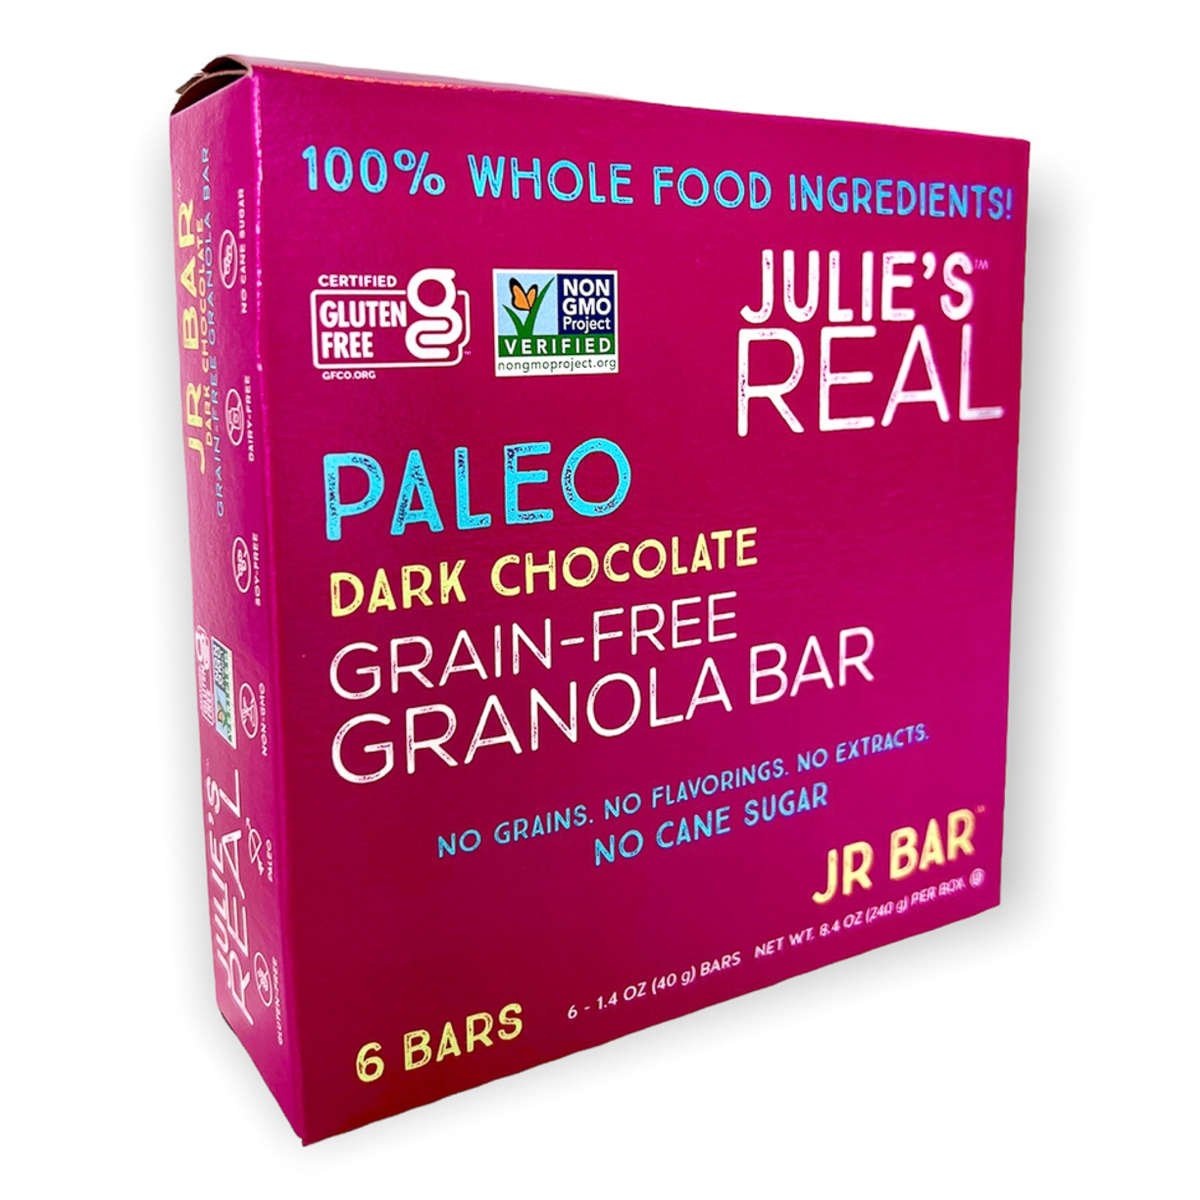 Julie's Real JR Bar